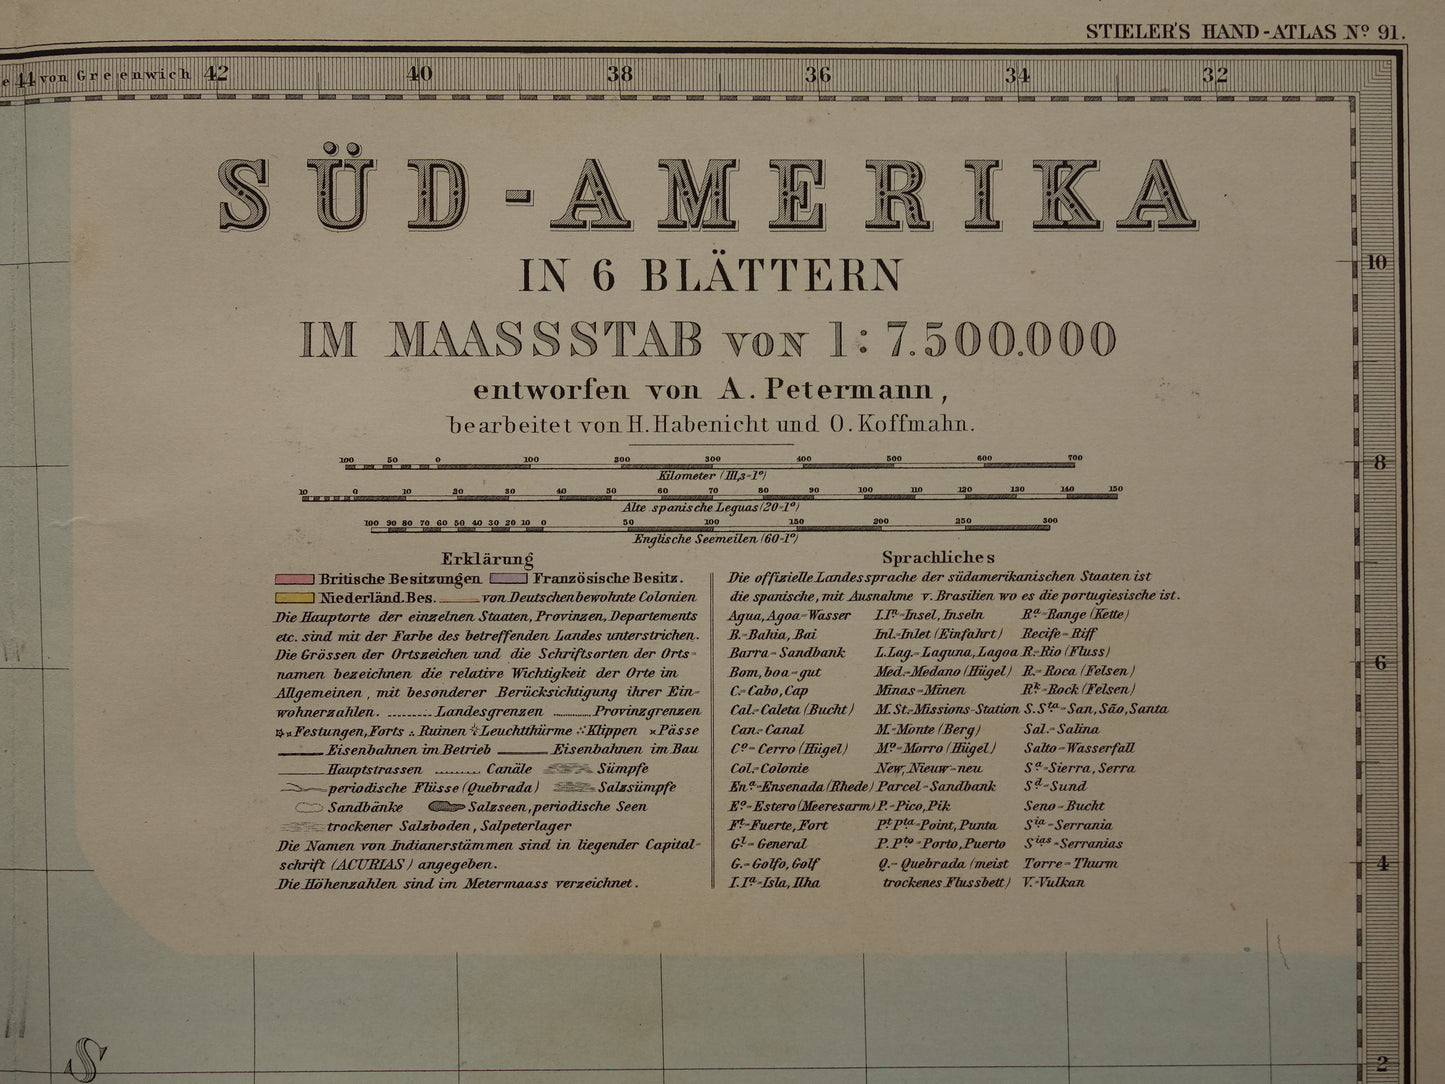 ZUID-AMERIKA Grote oude kaart uit 1885 van continent - originele antieke landkaart met jaartal - historische kaarten van Zuid-Amerika XL